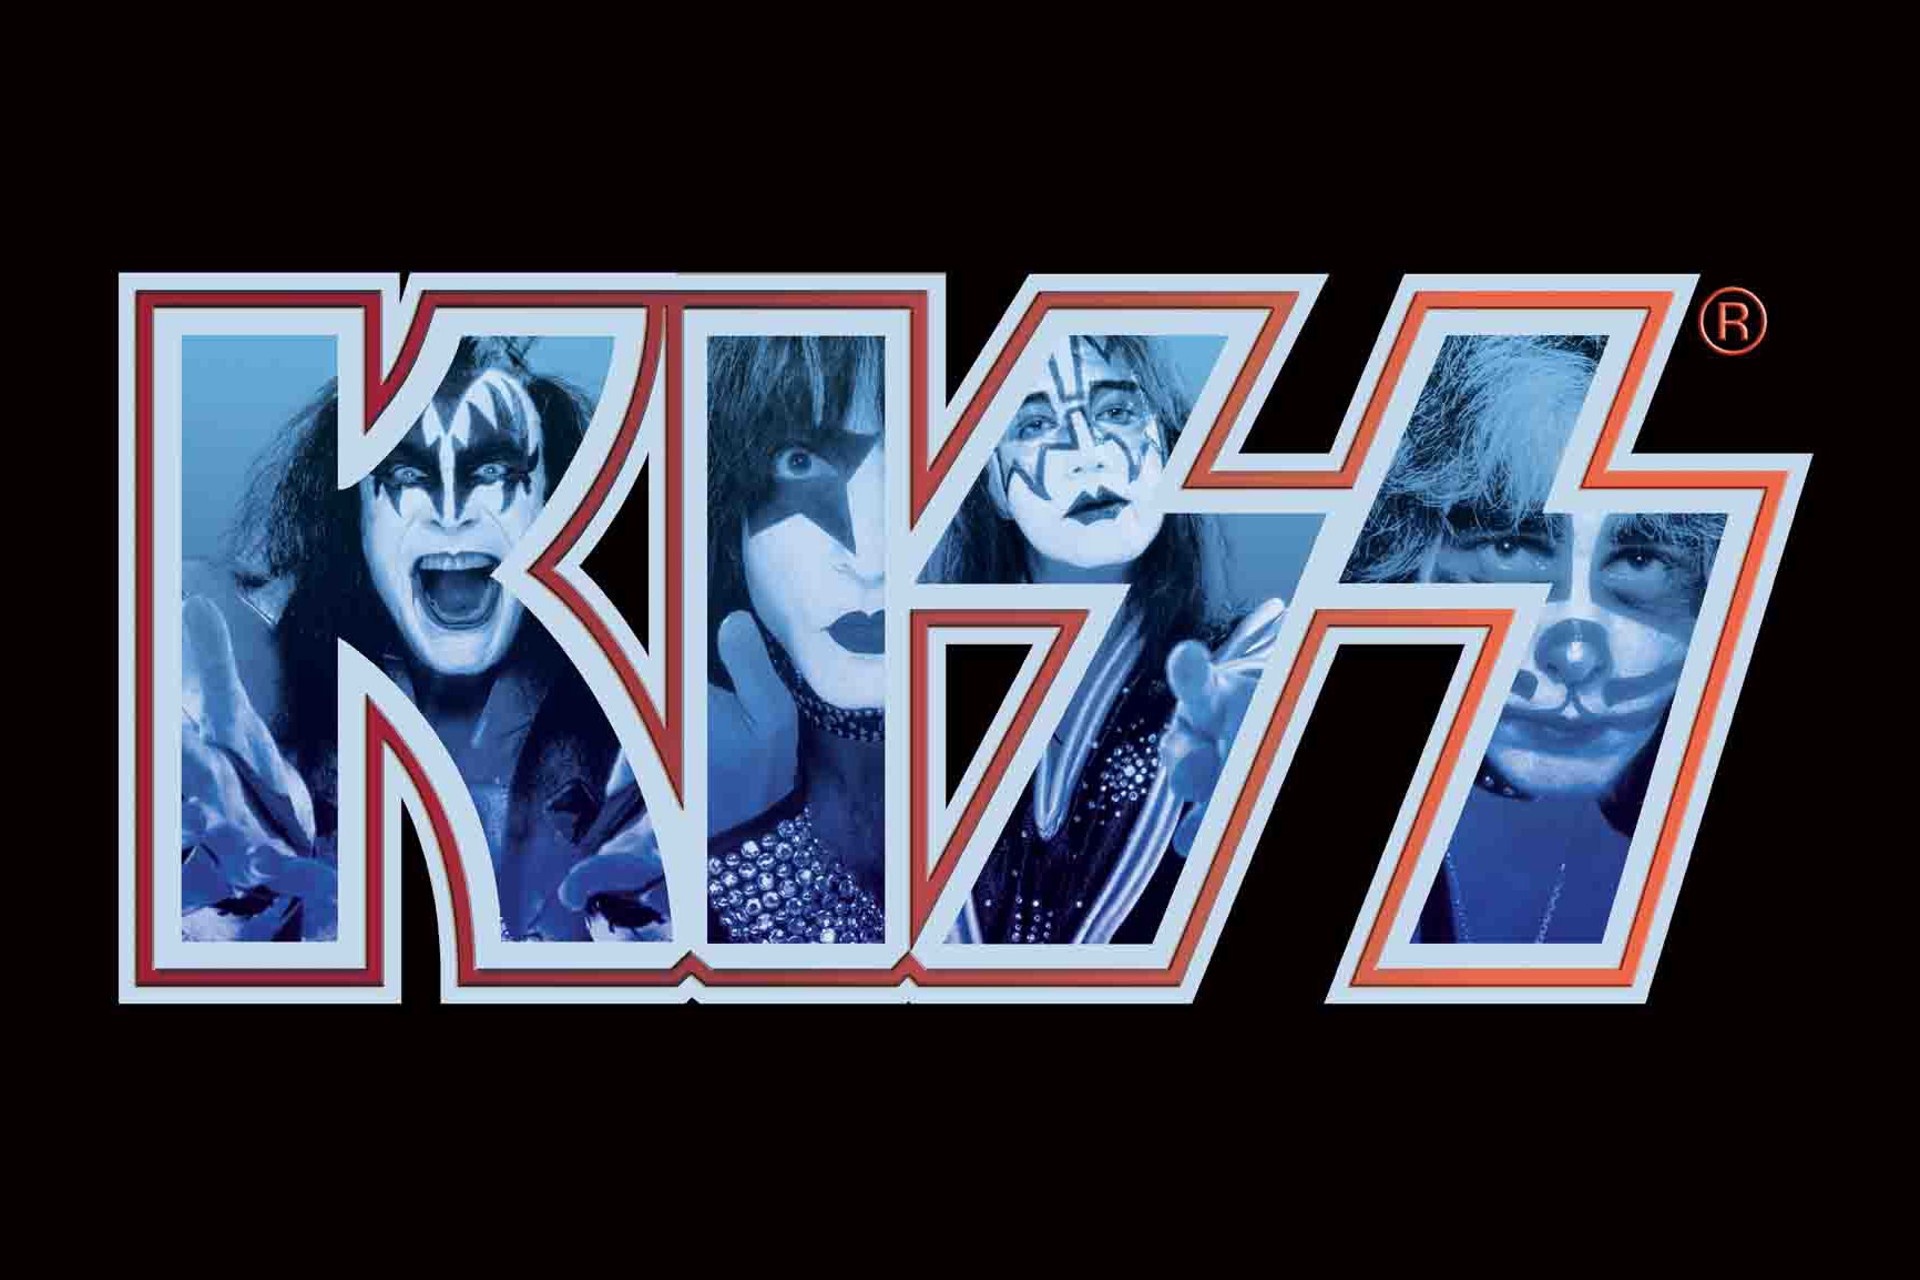 Hd Classic Rock Photos - Kiss Rock - HD Wallpaper 